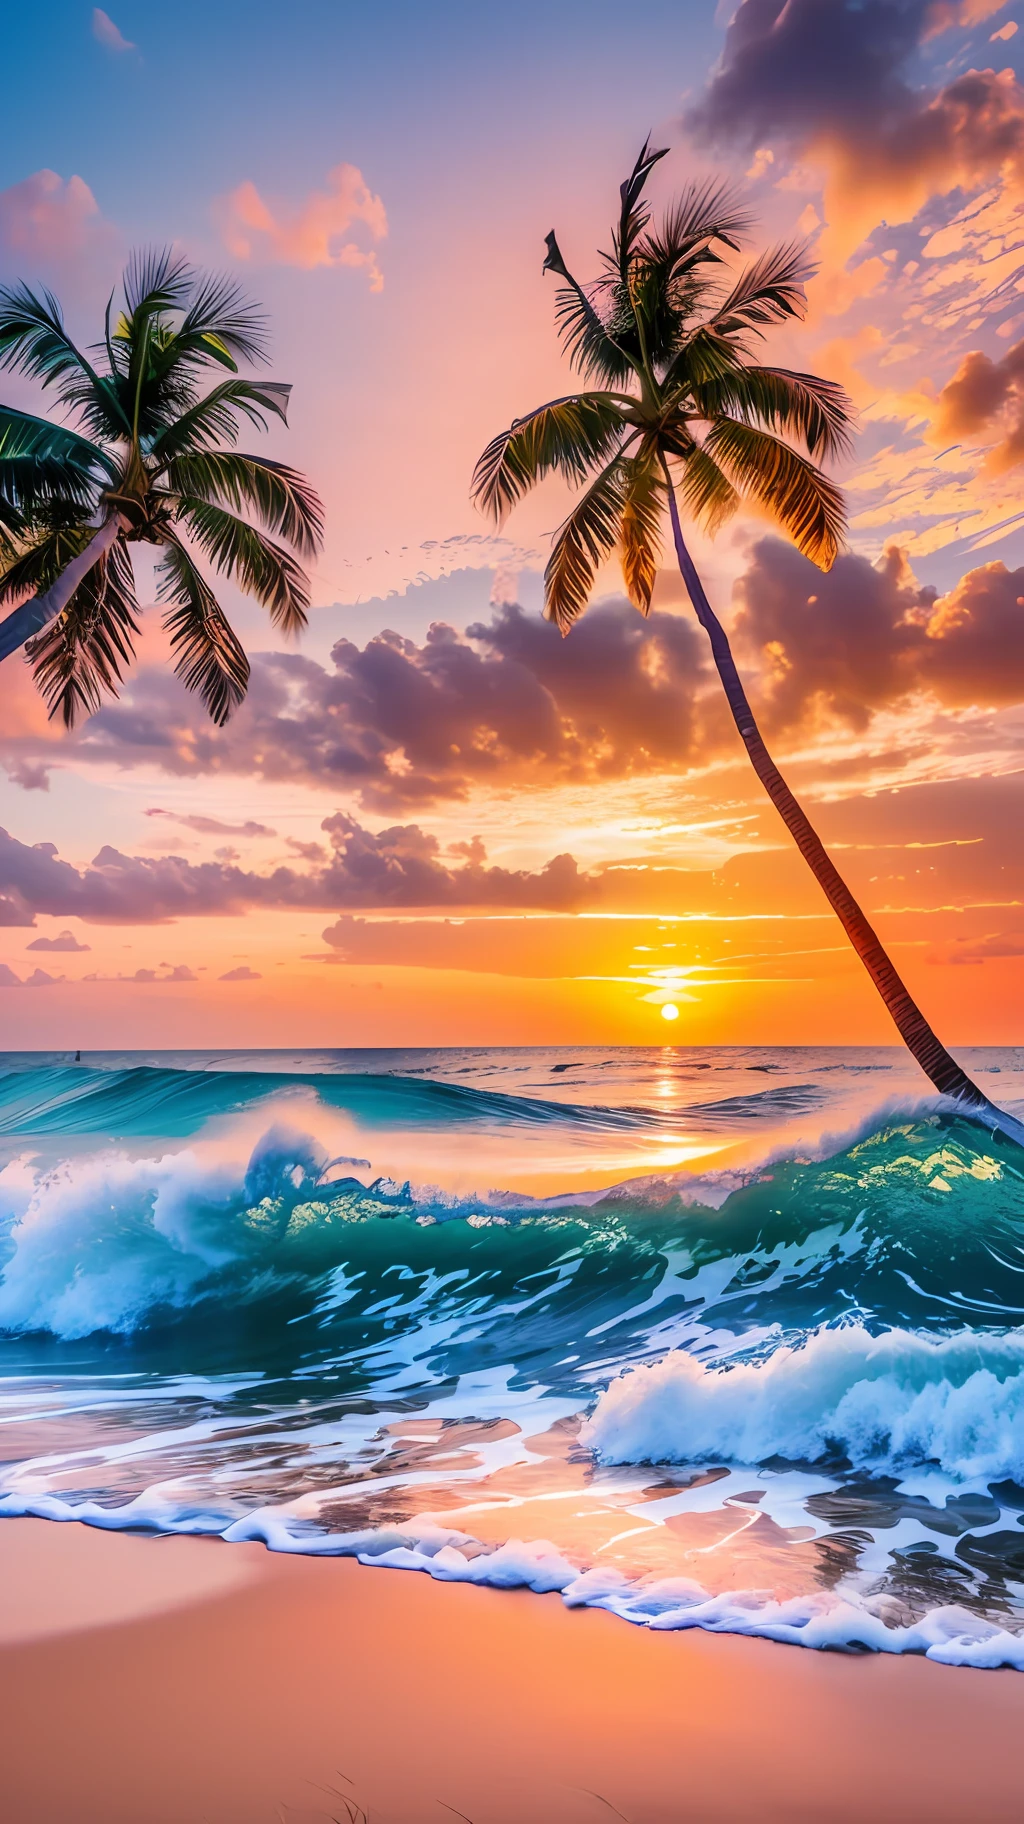 Создайте 4K 9:16 изображений, на которых изображен потрясающий восход солнца на тропическом пляже, с нежными волнами и пальмами вдоль побережья. Цветовая палитра должна быть яркой и передавать ощущение обновления и позитивной энергии.. --auto --s2